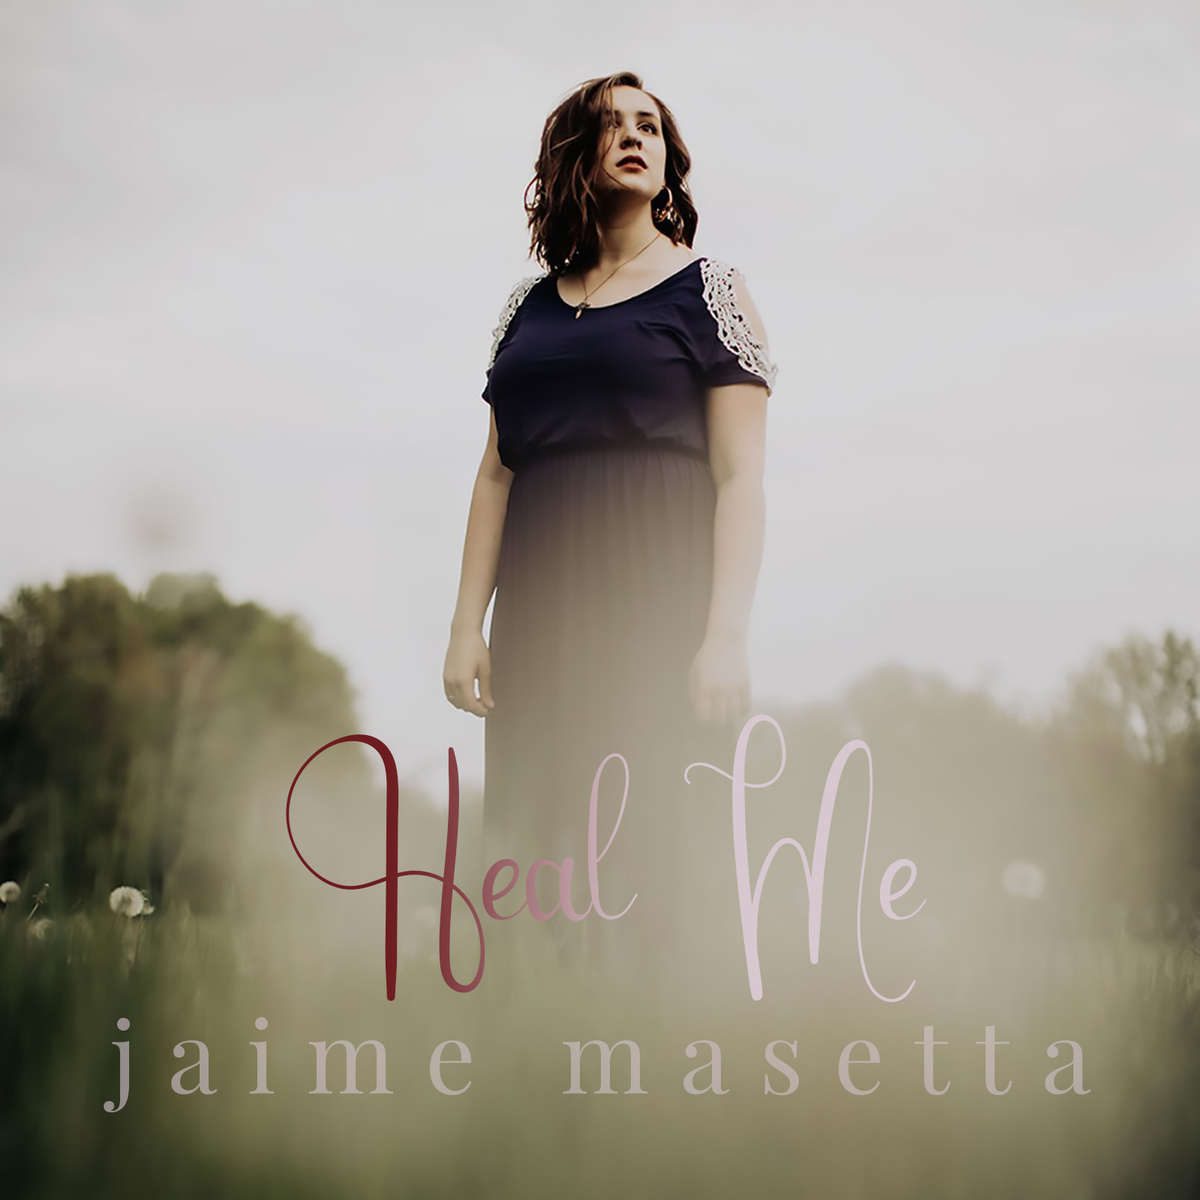 Jaime Masetta - Heal Me